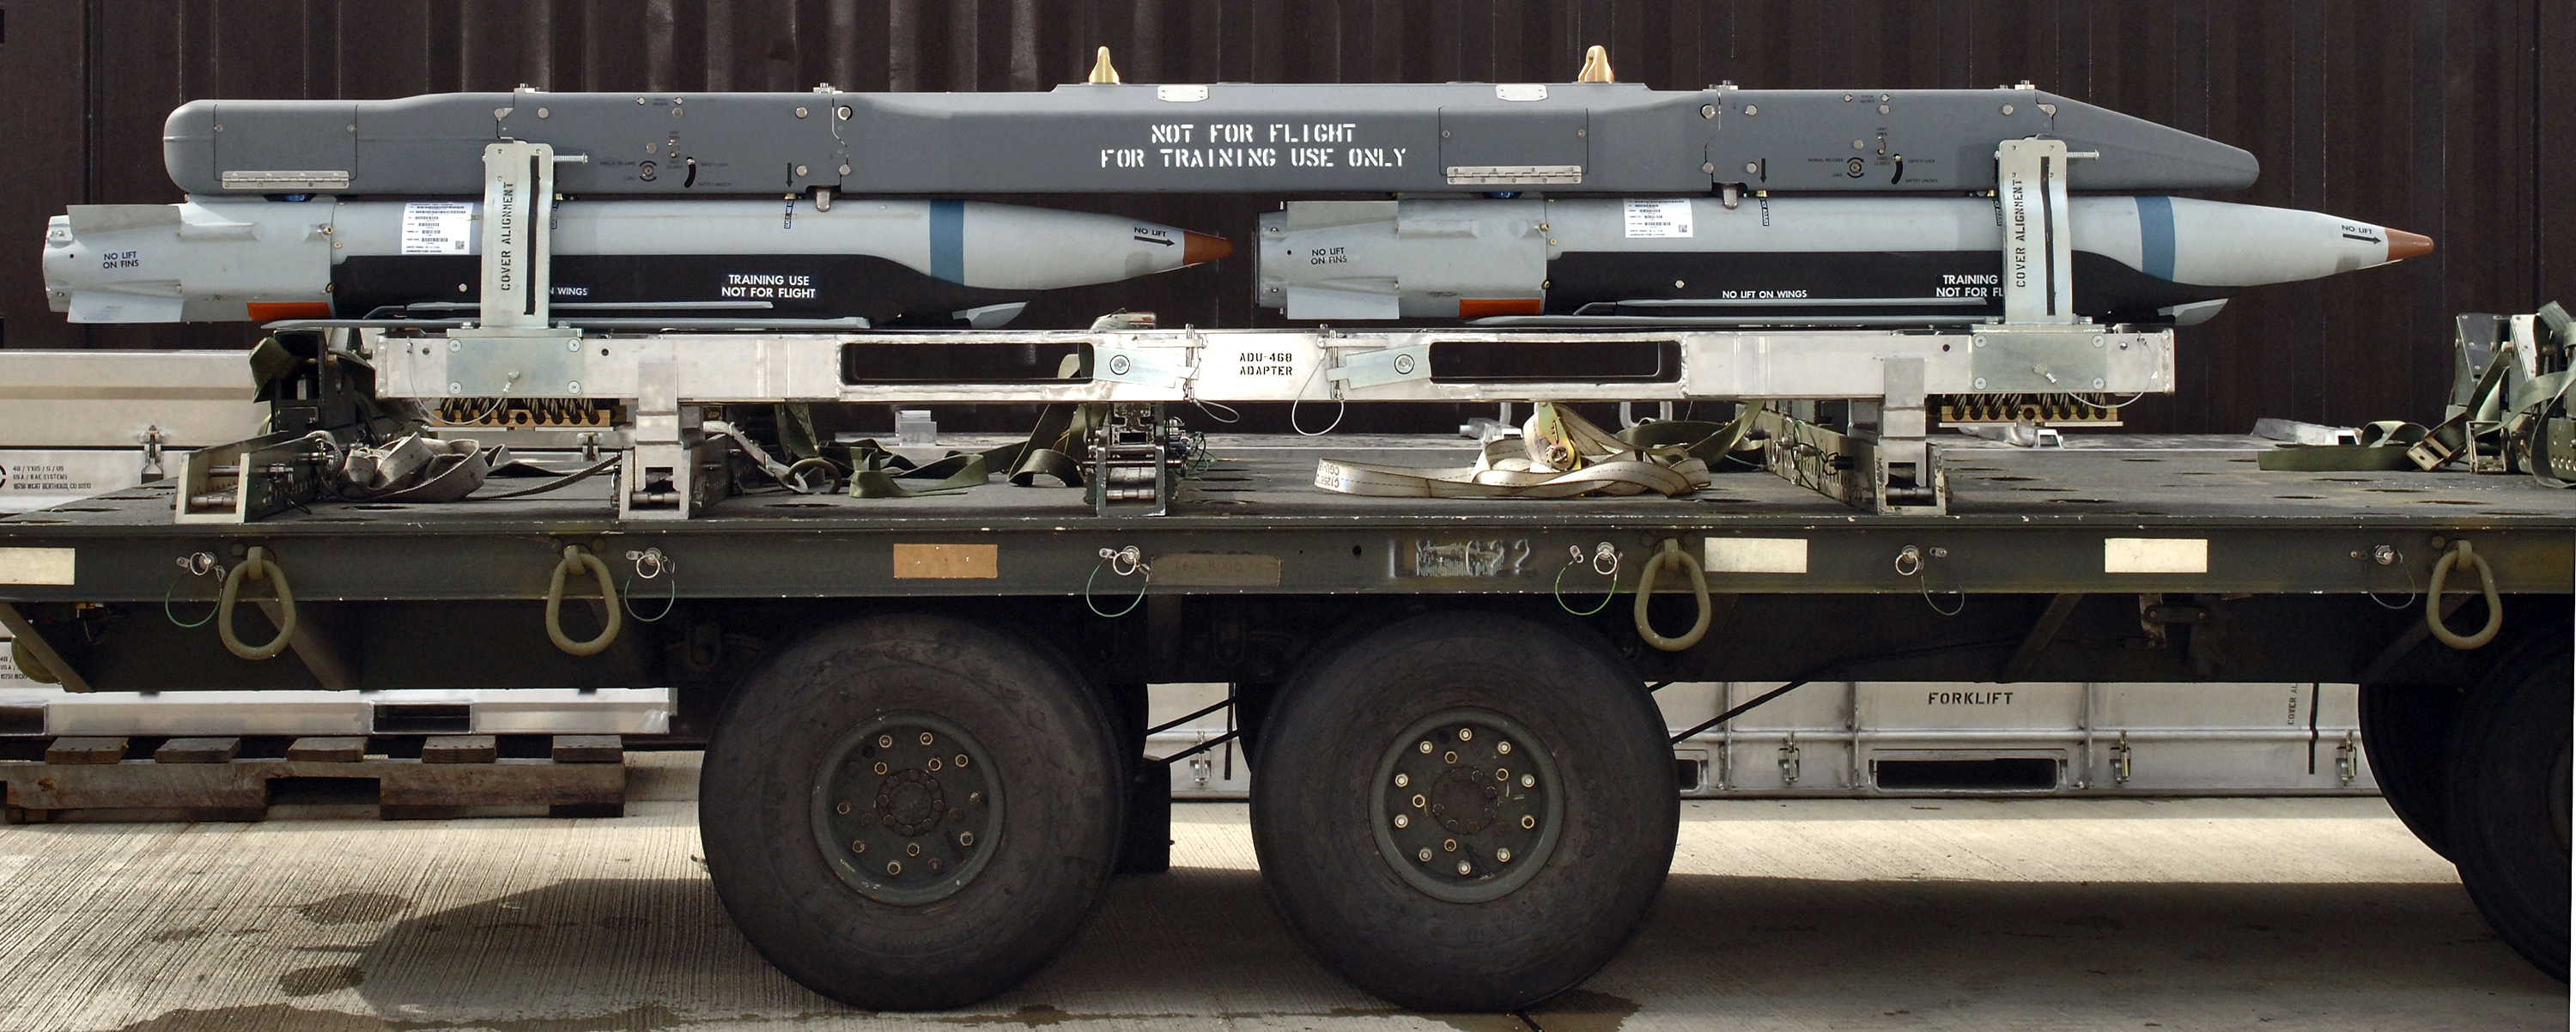 Gbu 39b Small Diameter Bomb Weapon System U S Air Force Fact Sheet Display